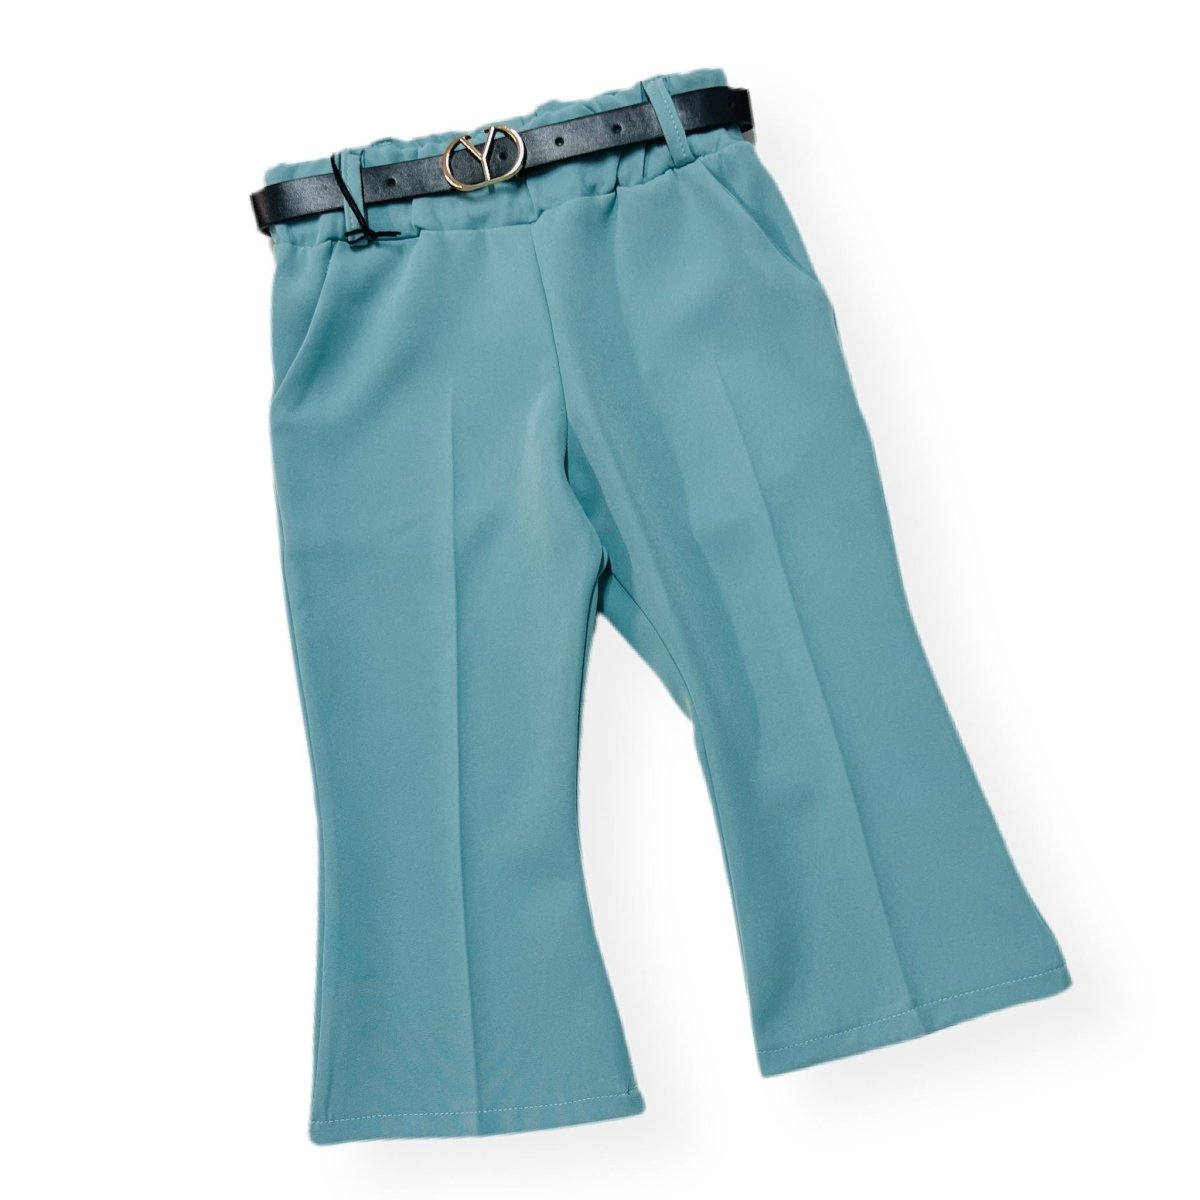 Pantalone a Zampa leggero Bimba - Mstore016 - Pantalone Bimba - Granada